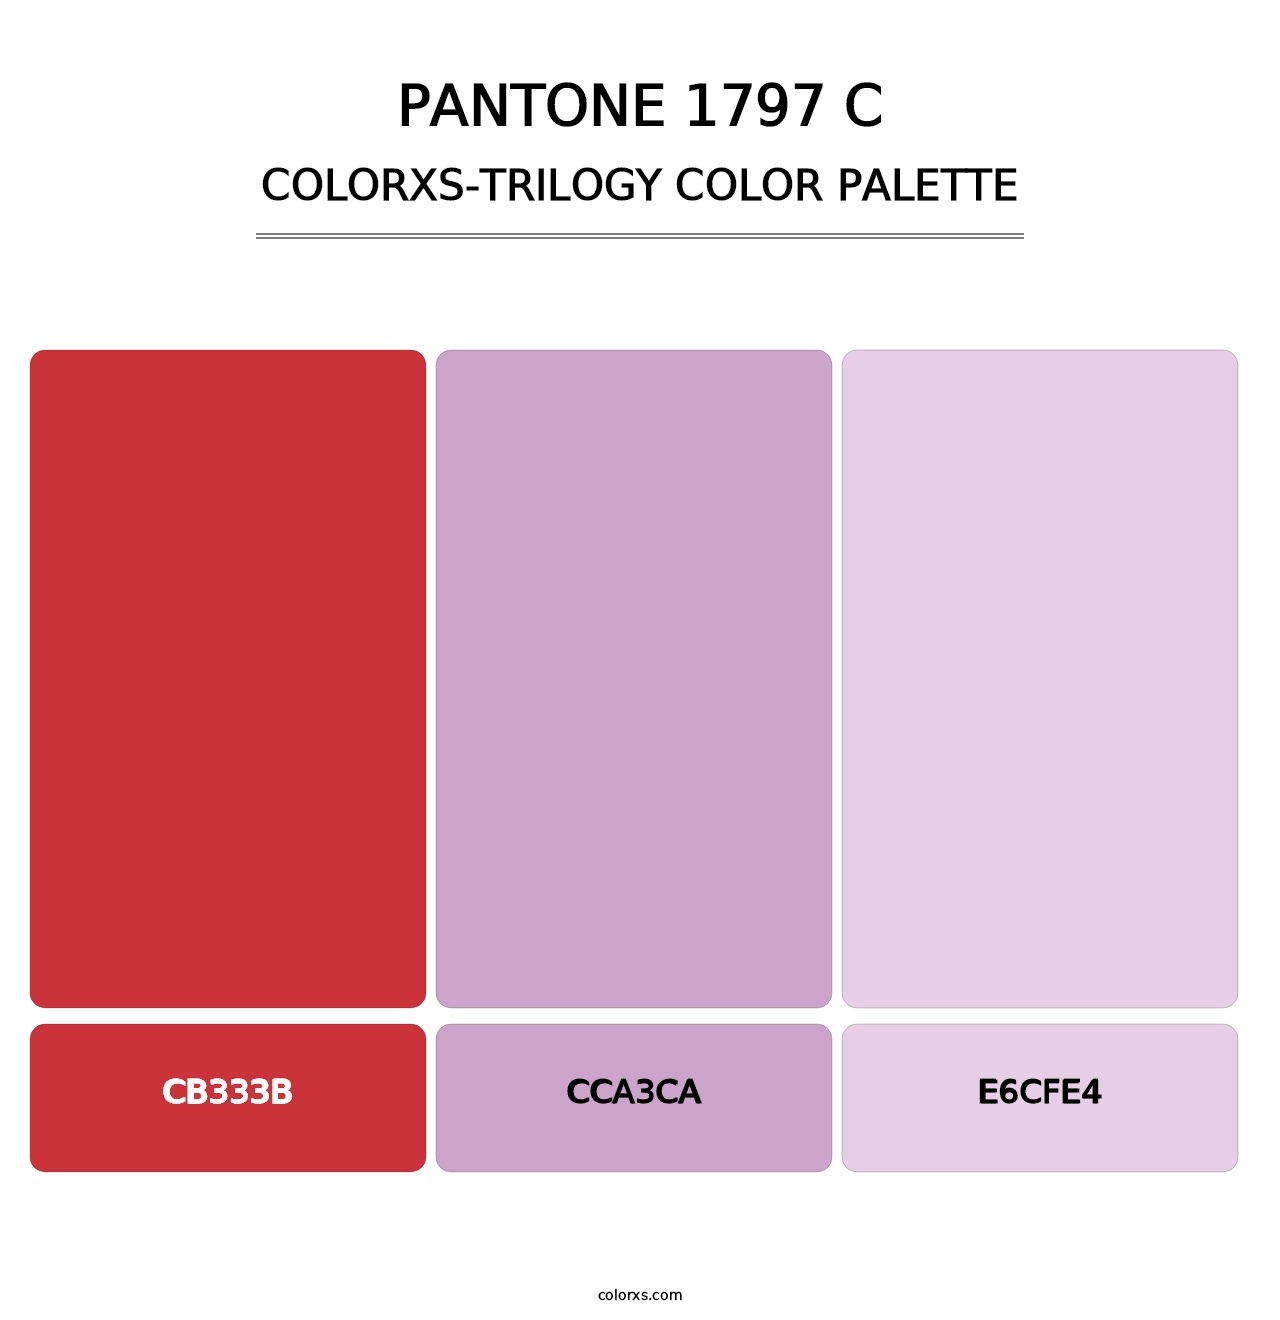 PANTONE 1797 C - Colorxs Trilogy Palette